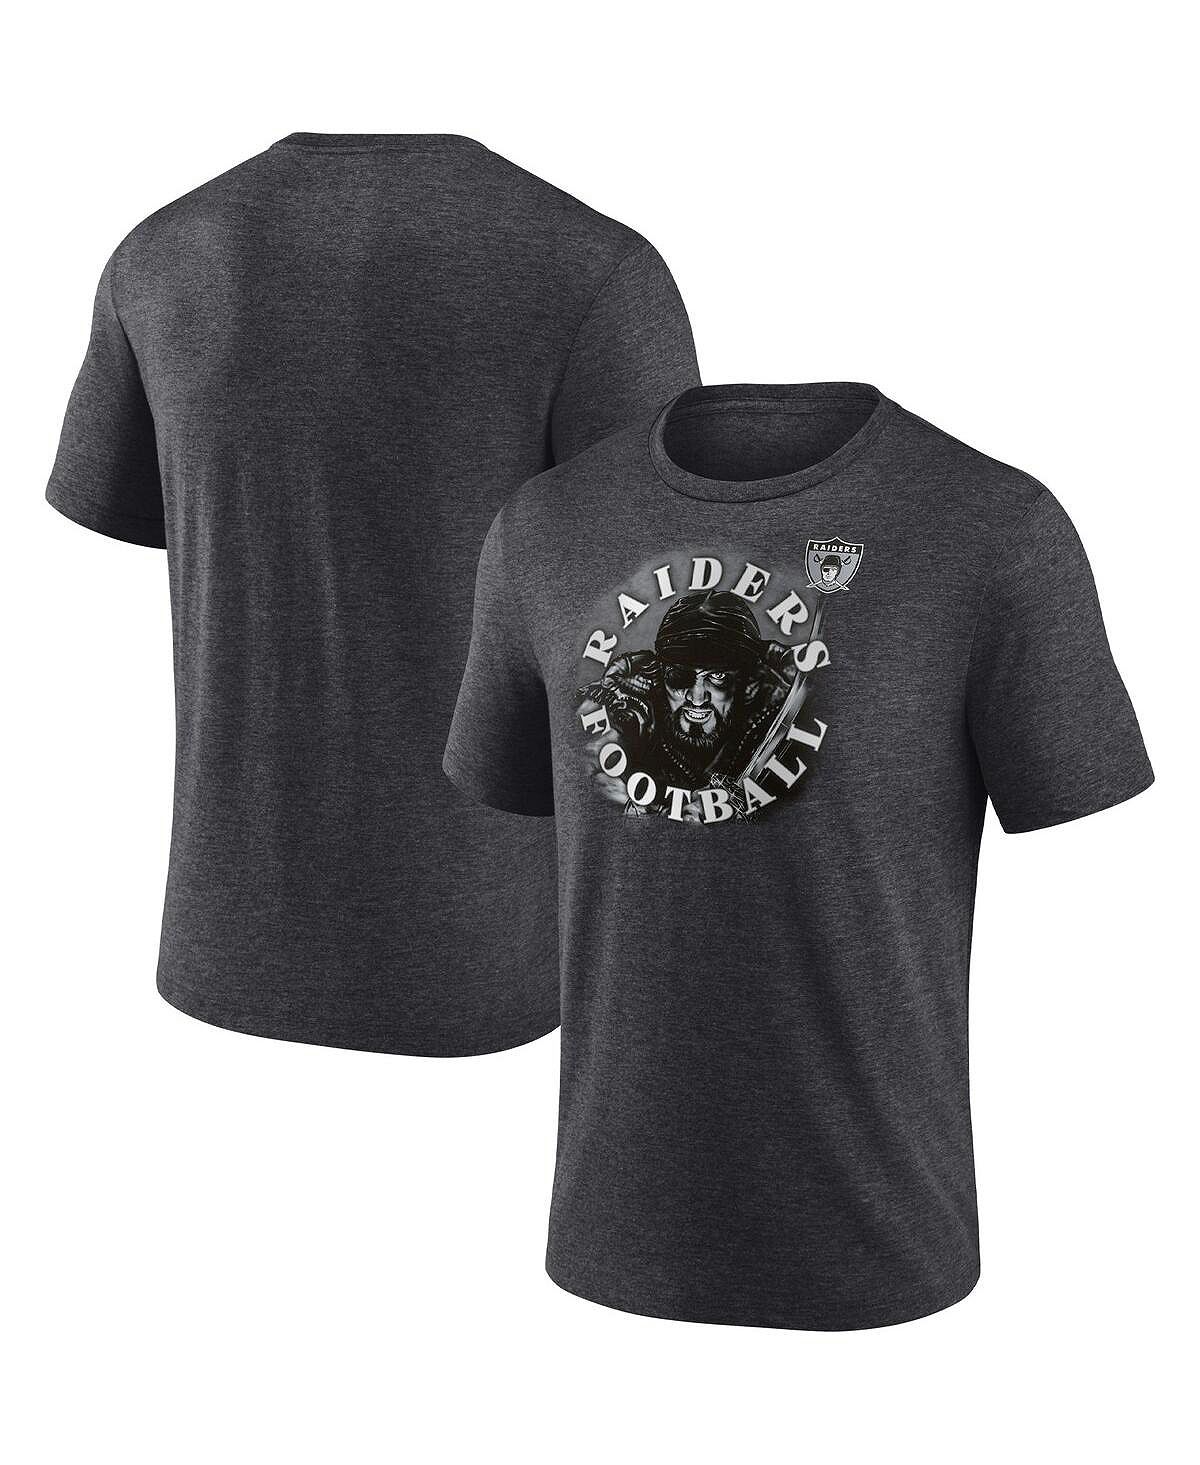 Мужская угольно-серая футболка las vegas raiders с фирменным логотипом sporting chance Fanatics, мульти